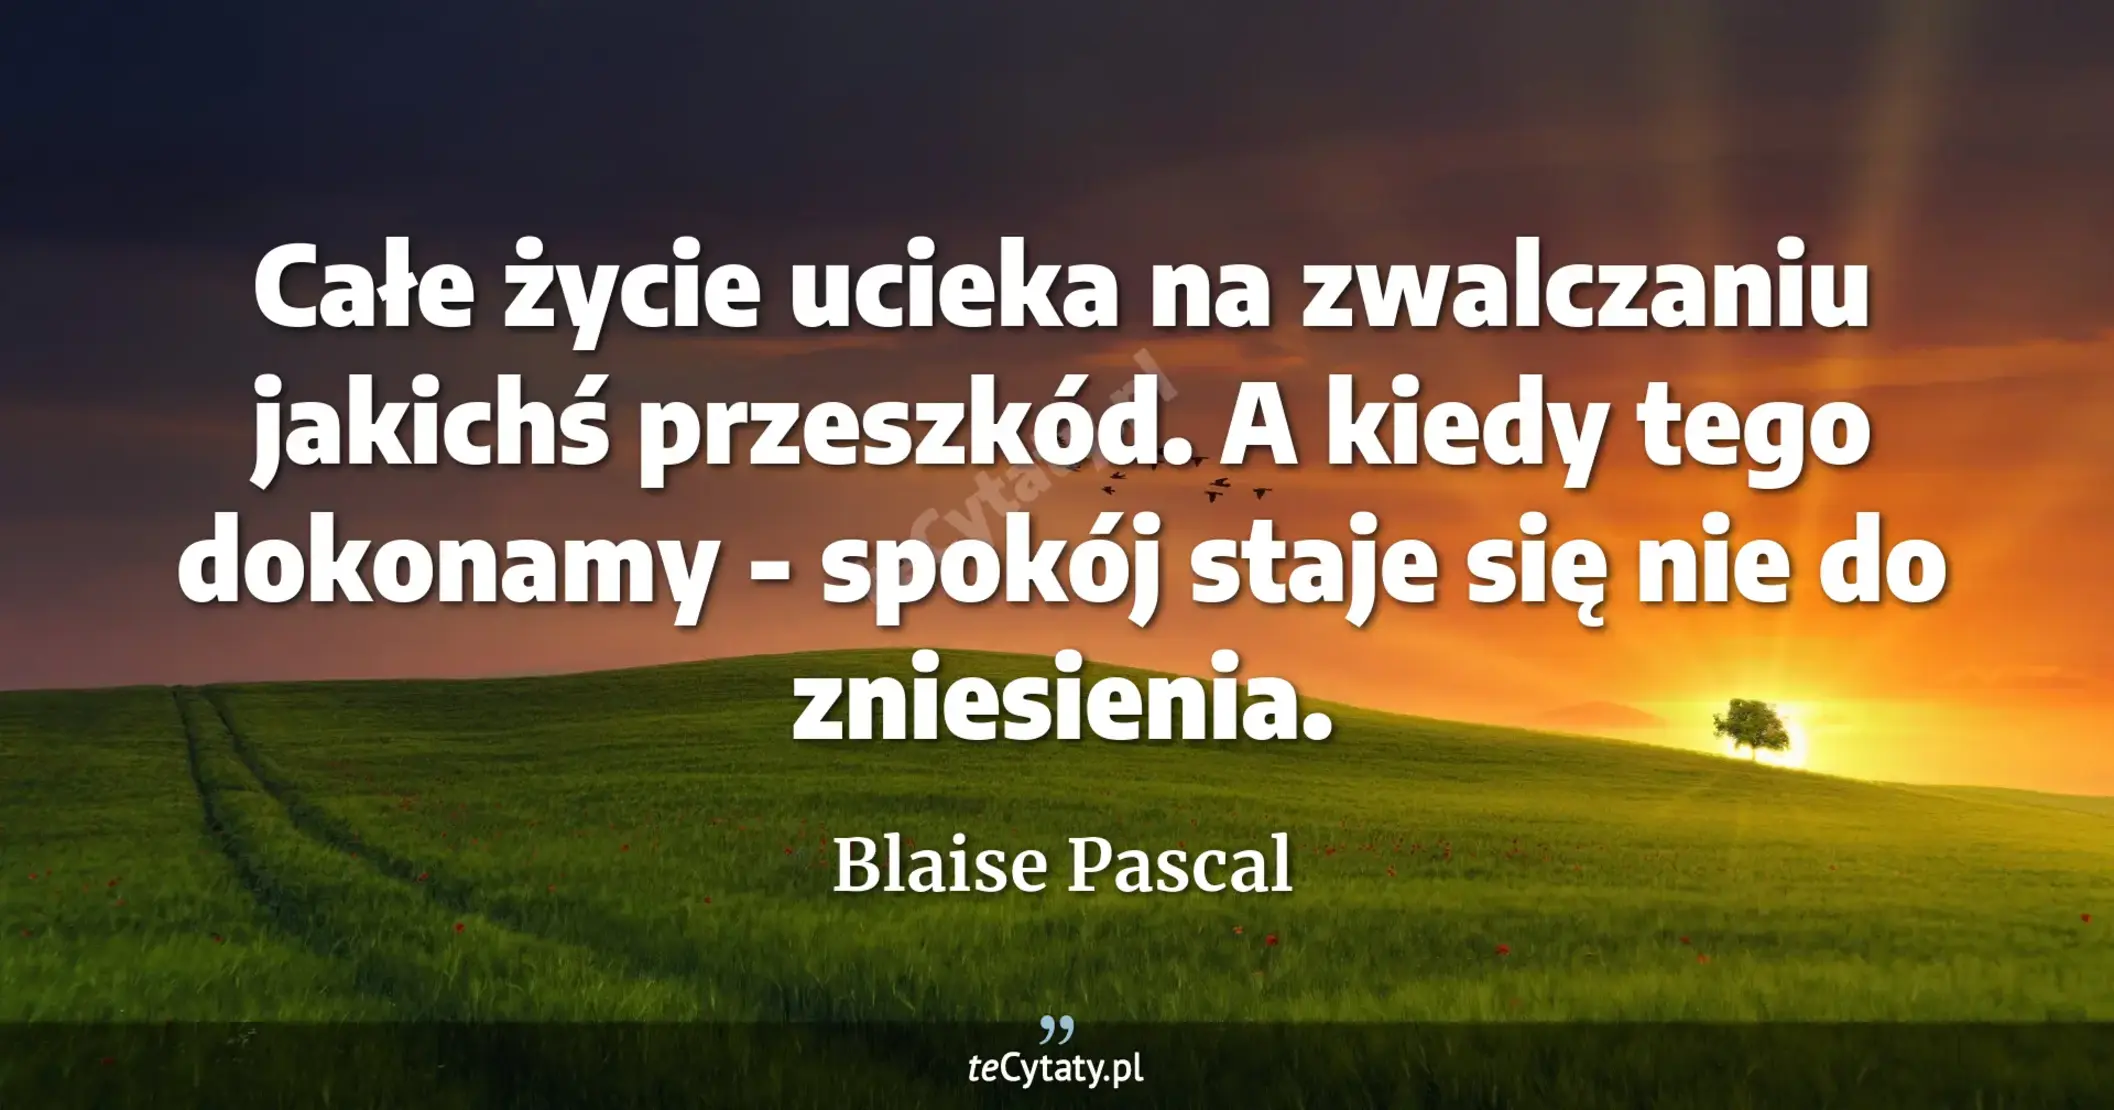 Całe życie ucieka na zwalczaniu jakichś przeszkód. A kiedy tego dokonamy - spokój staje się nie do zniesienia. - Blaise Pascal